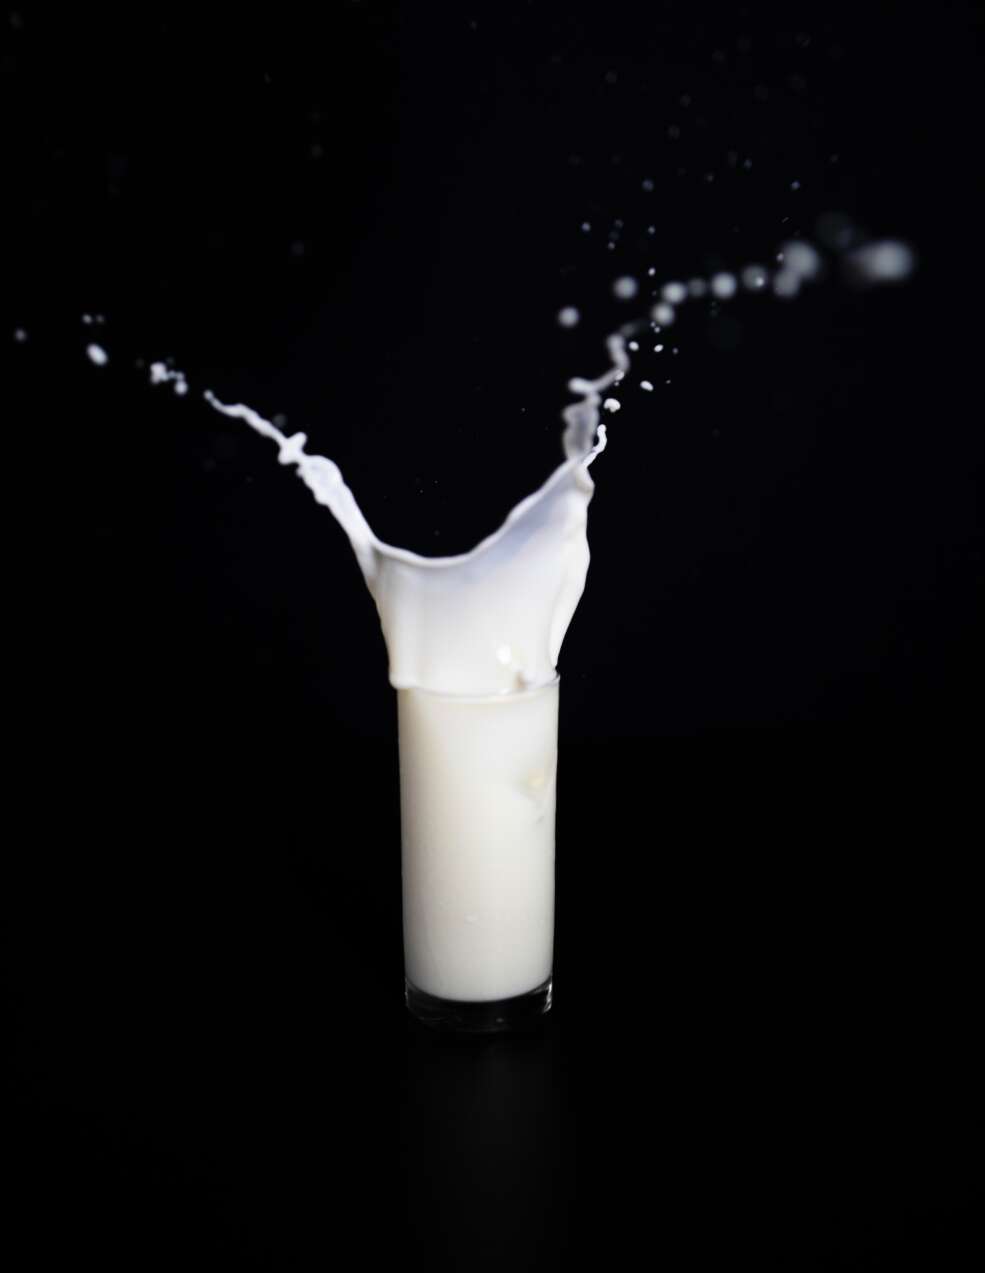 oat milk coffee dairy alternative